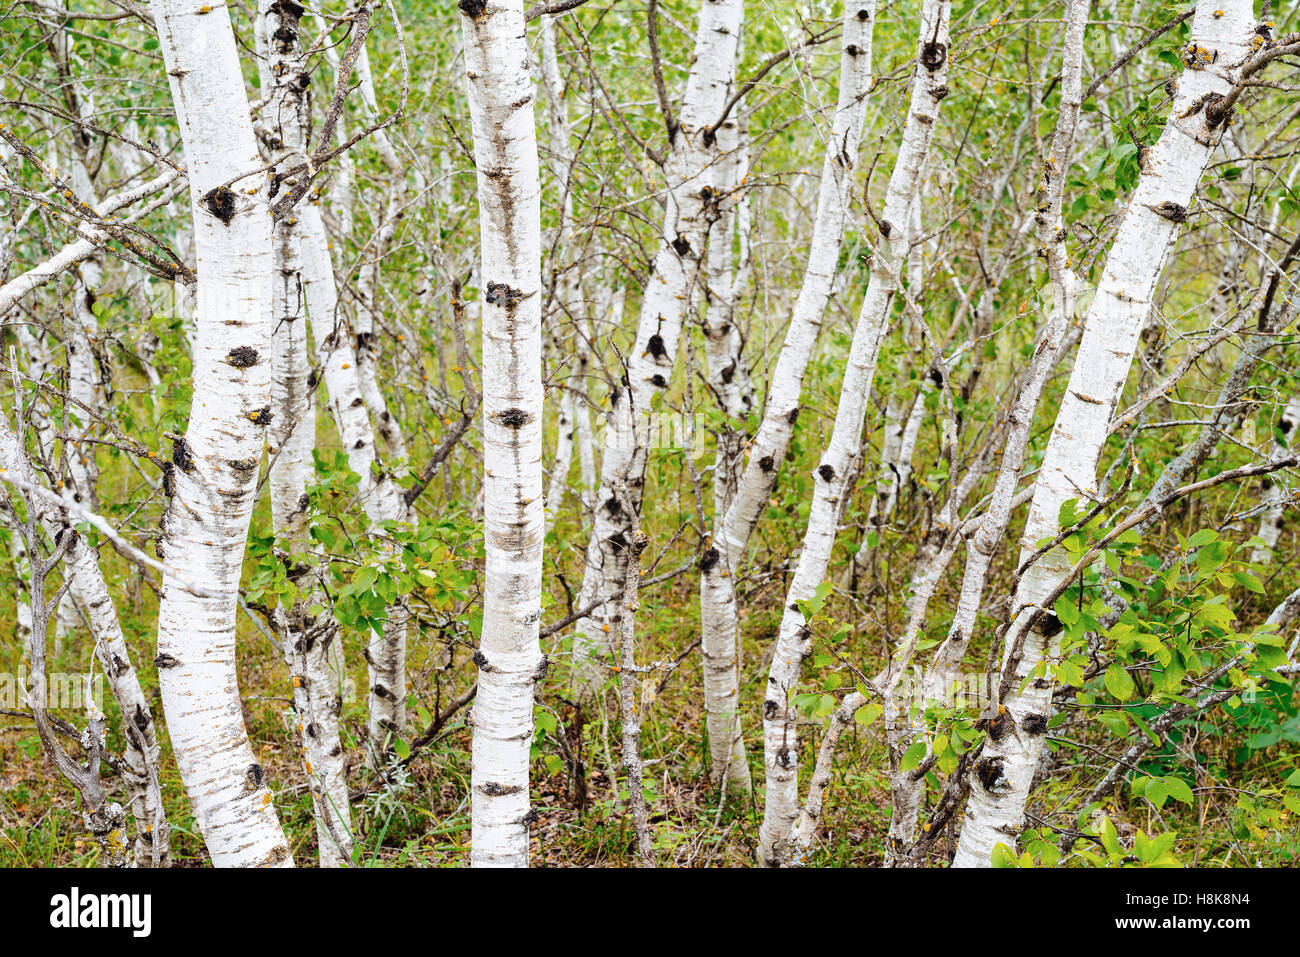 White paper di betulle (Betula papyrifera) in boschi di abete rosso Parco Provinciale, Manitoba, Canada Foto Stock